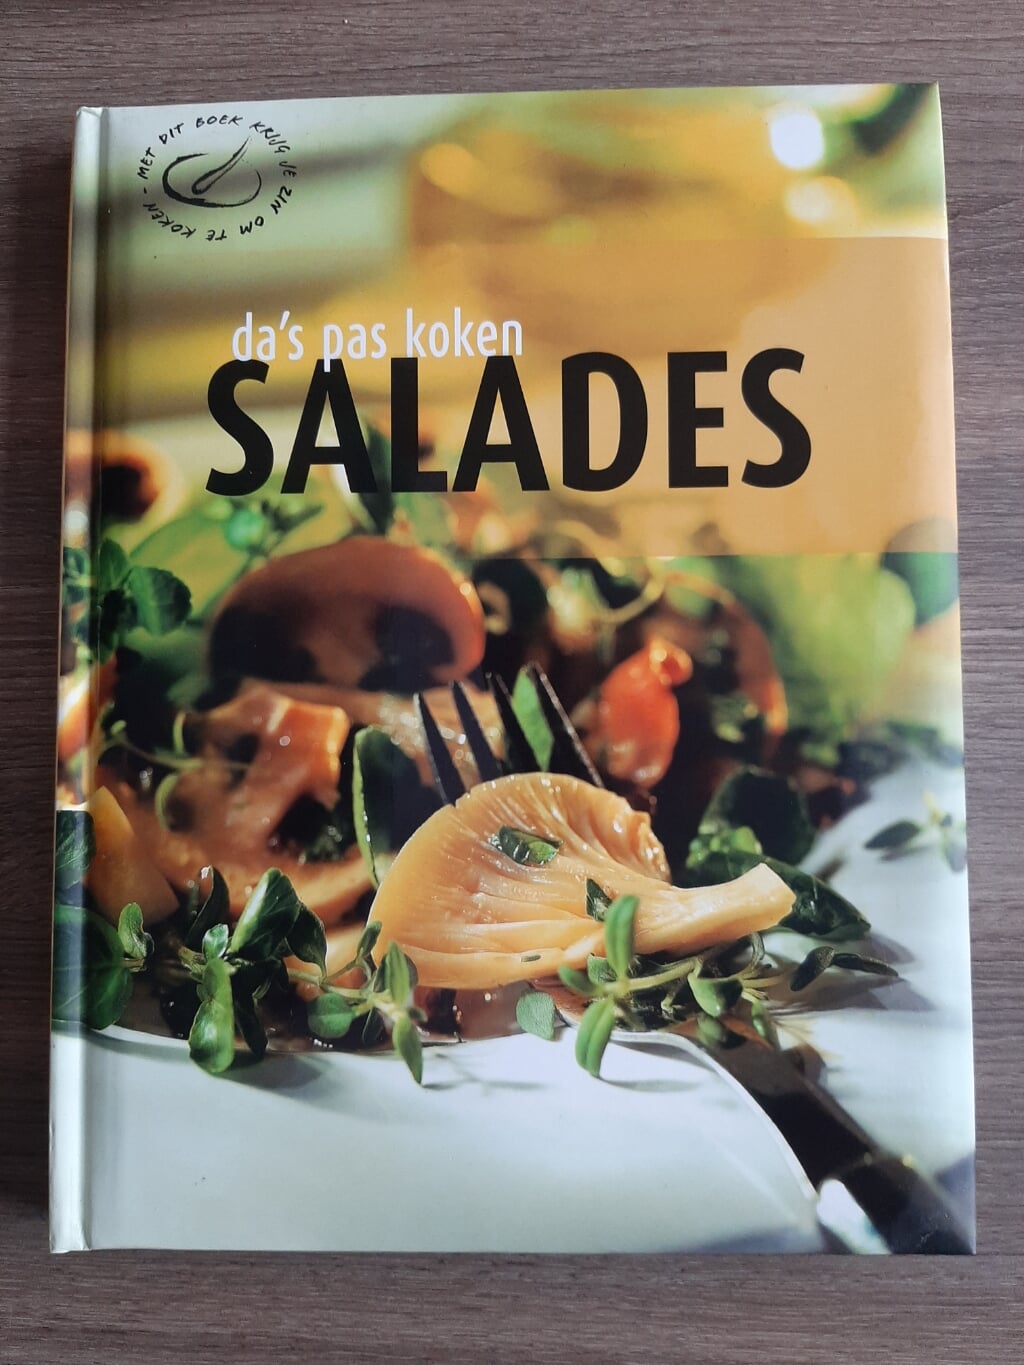 Da's pas koken: salades